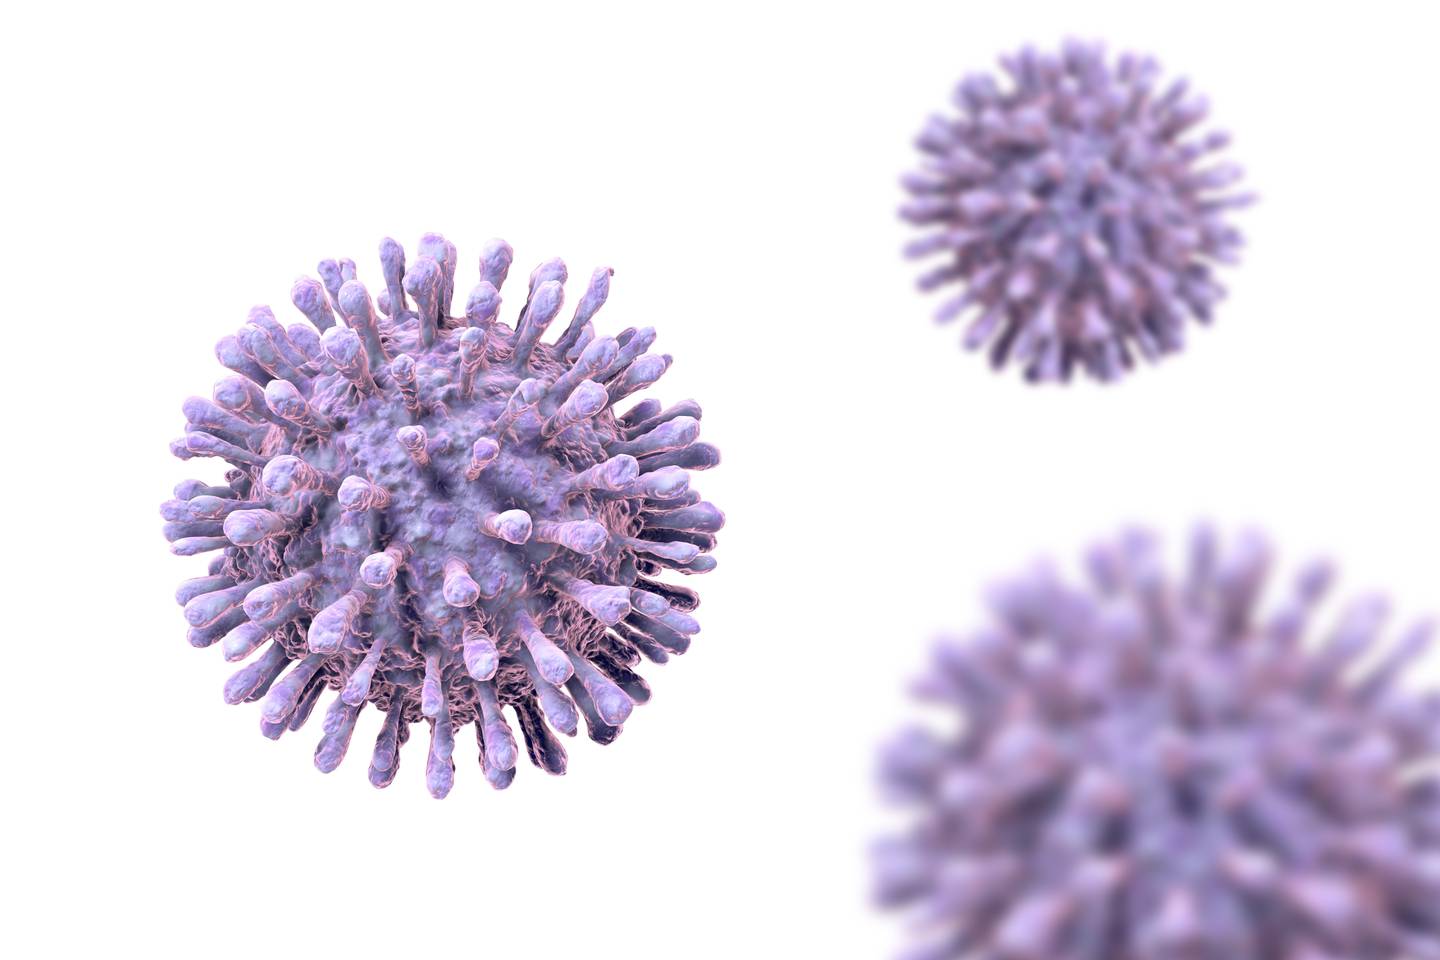 Así se ve el virus de inmunodeficiencia humana (VIH) a través de un microscopio.

Imagen: Shutterstock